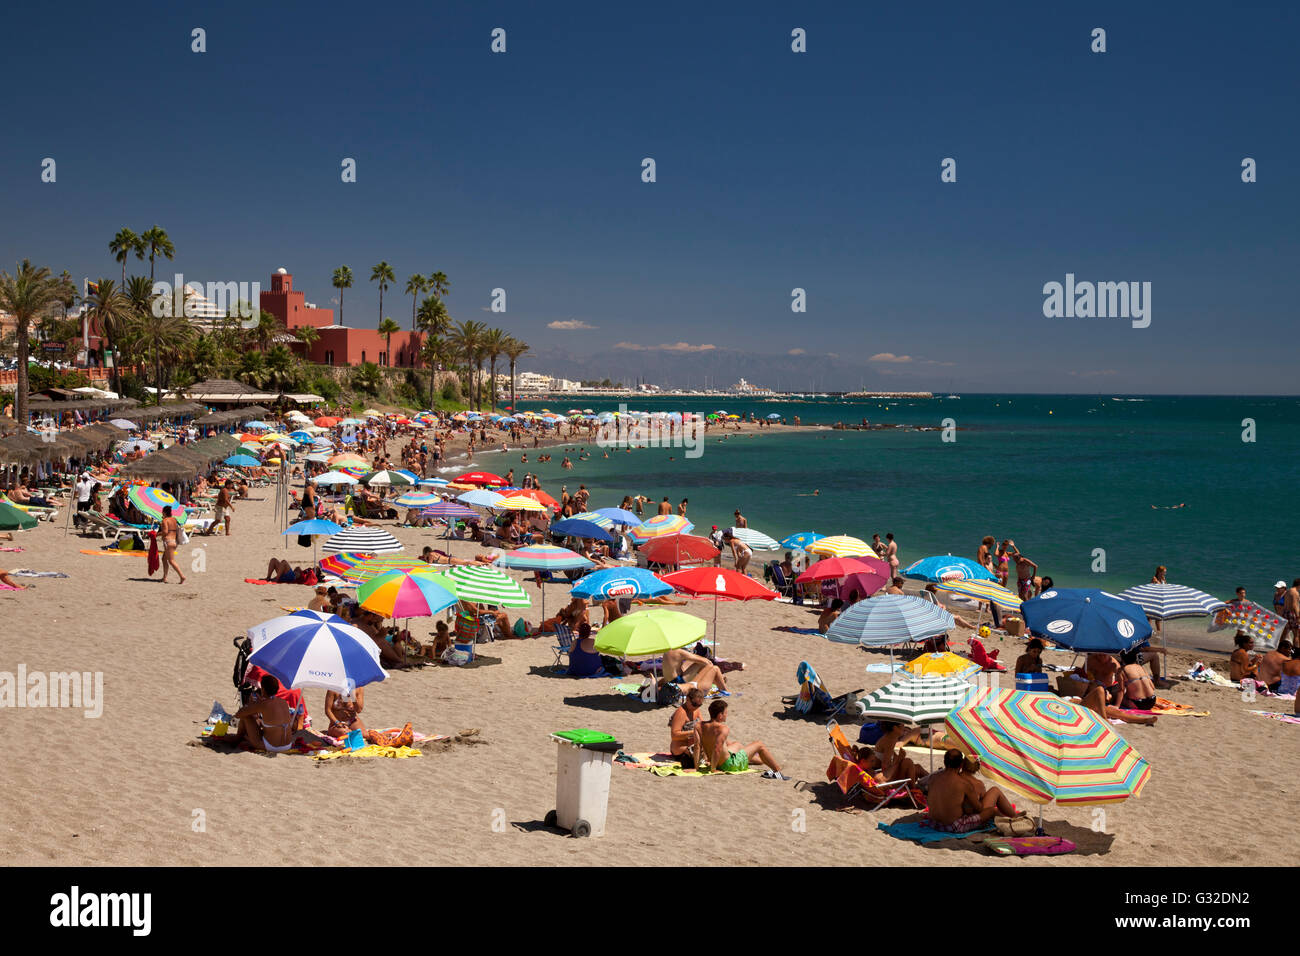 La concurrida playa de Playa de Santa Ana y el Castillo El Castillo de Bil-Bil, Benalmádena, Málaga, Costa del Sol, Andalucía, España Foto de stock